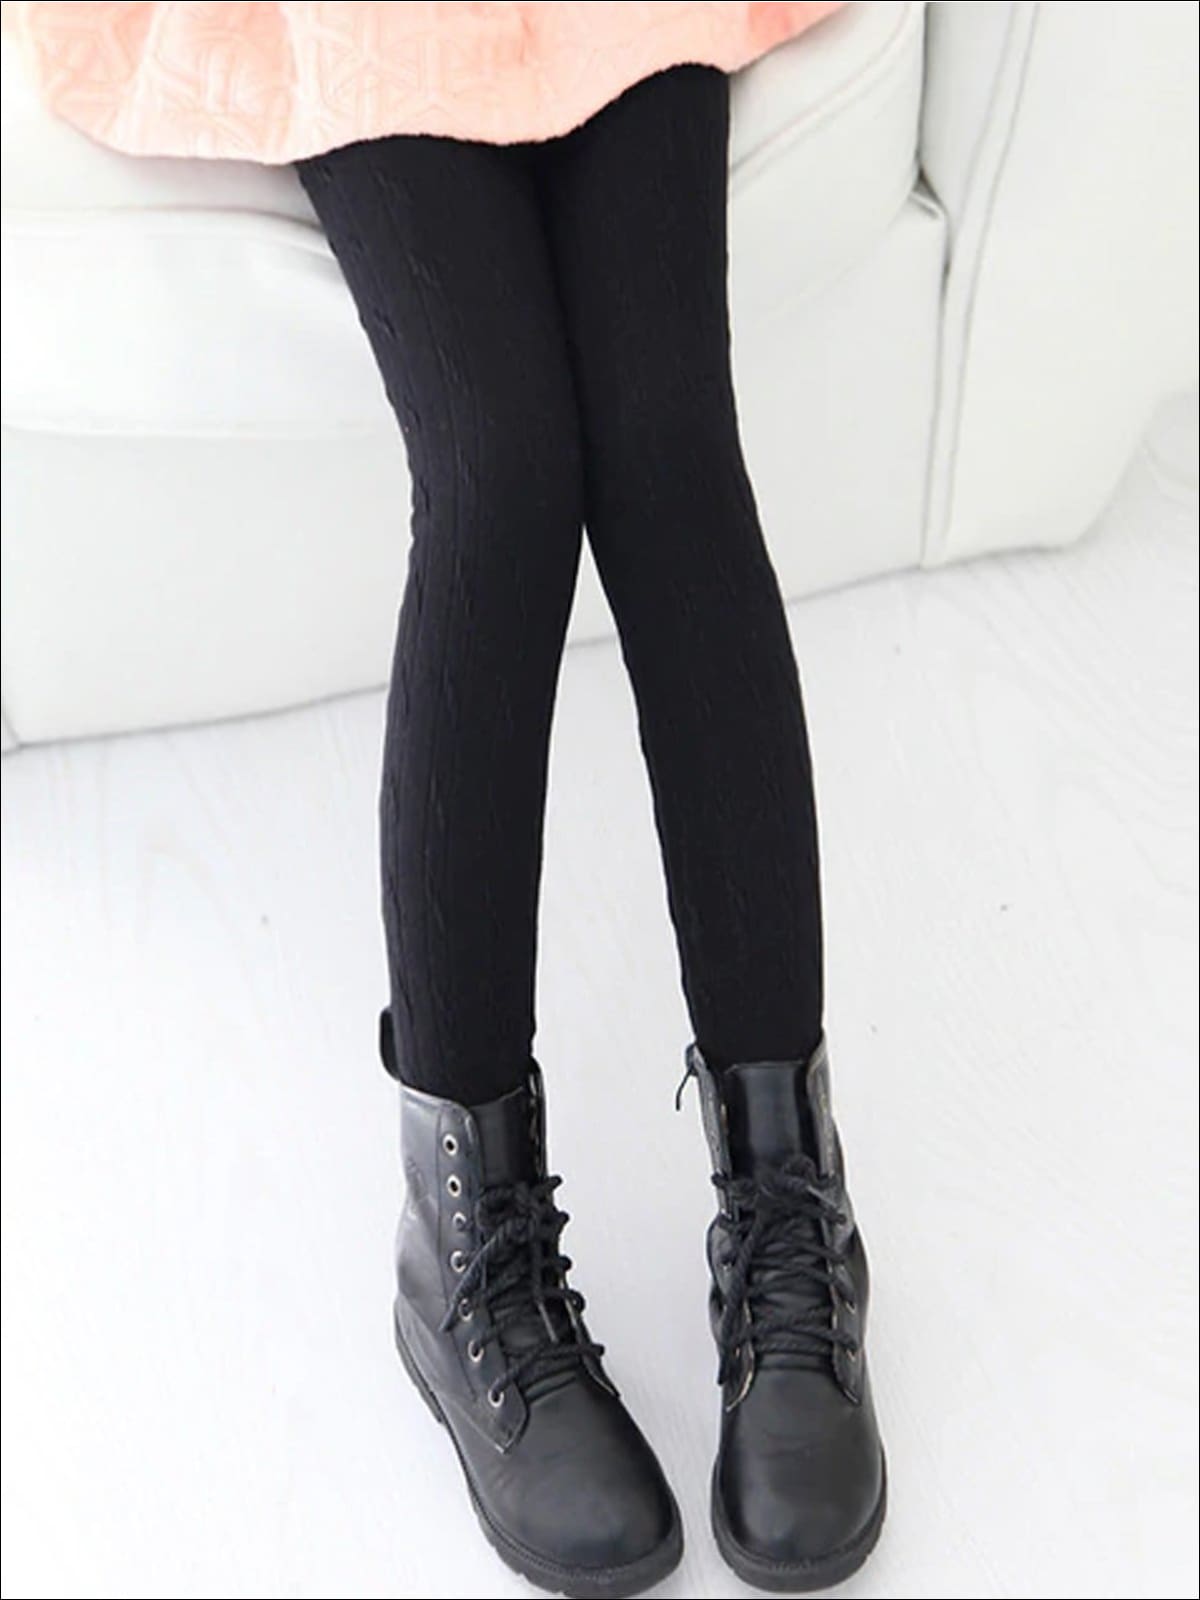 Girls Winter Fleece Lined Leggings - Black / 3T - Girls Leggings